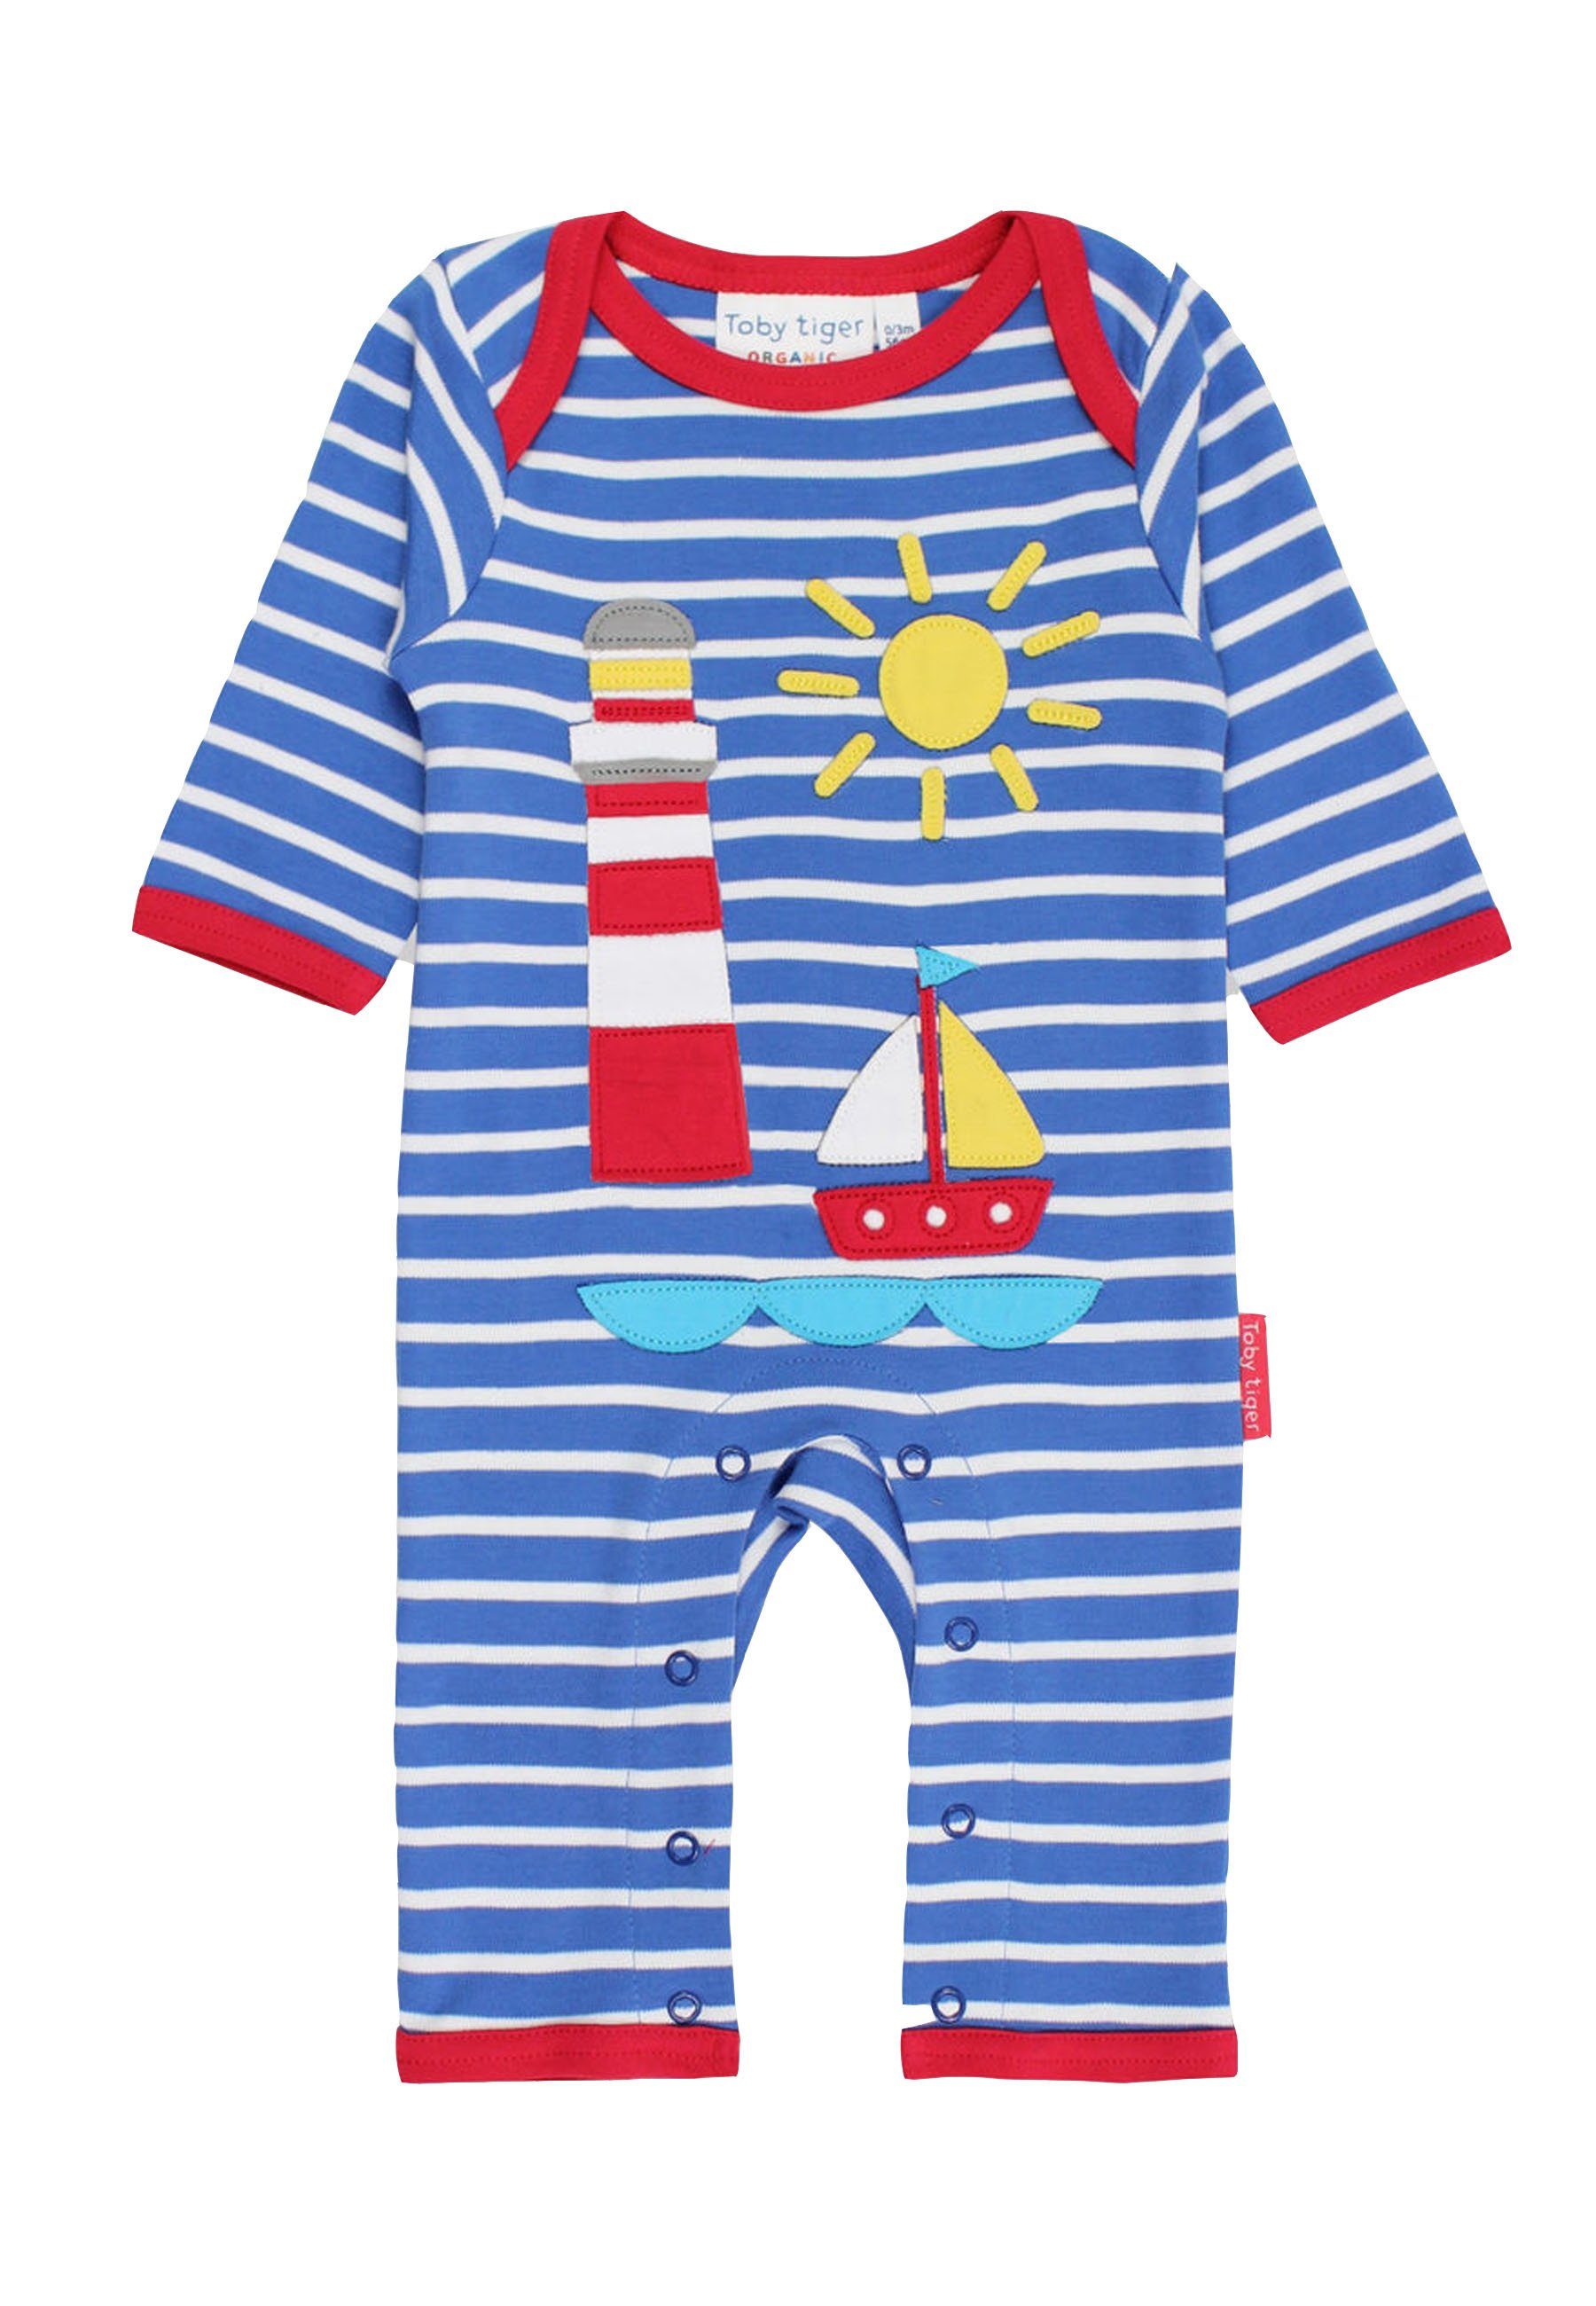 Segelboot Applikation mit Schlafanzug Tiger Schlafanzug Toby